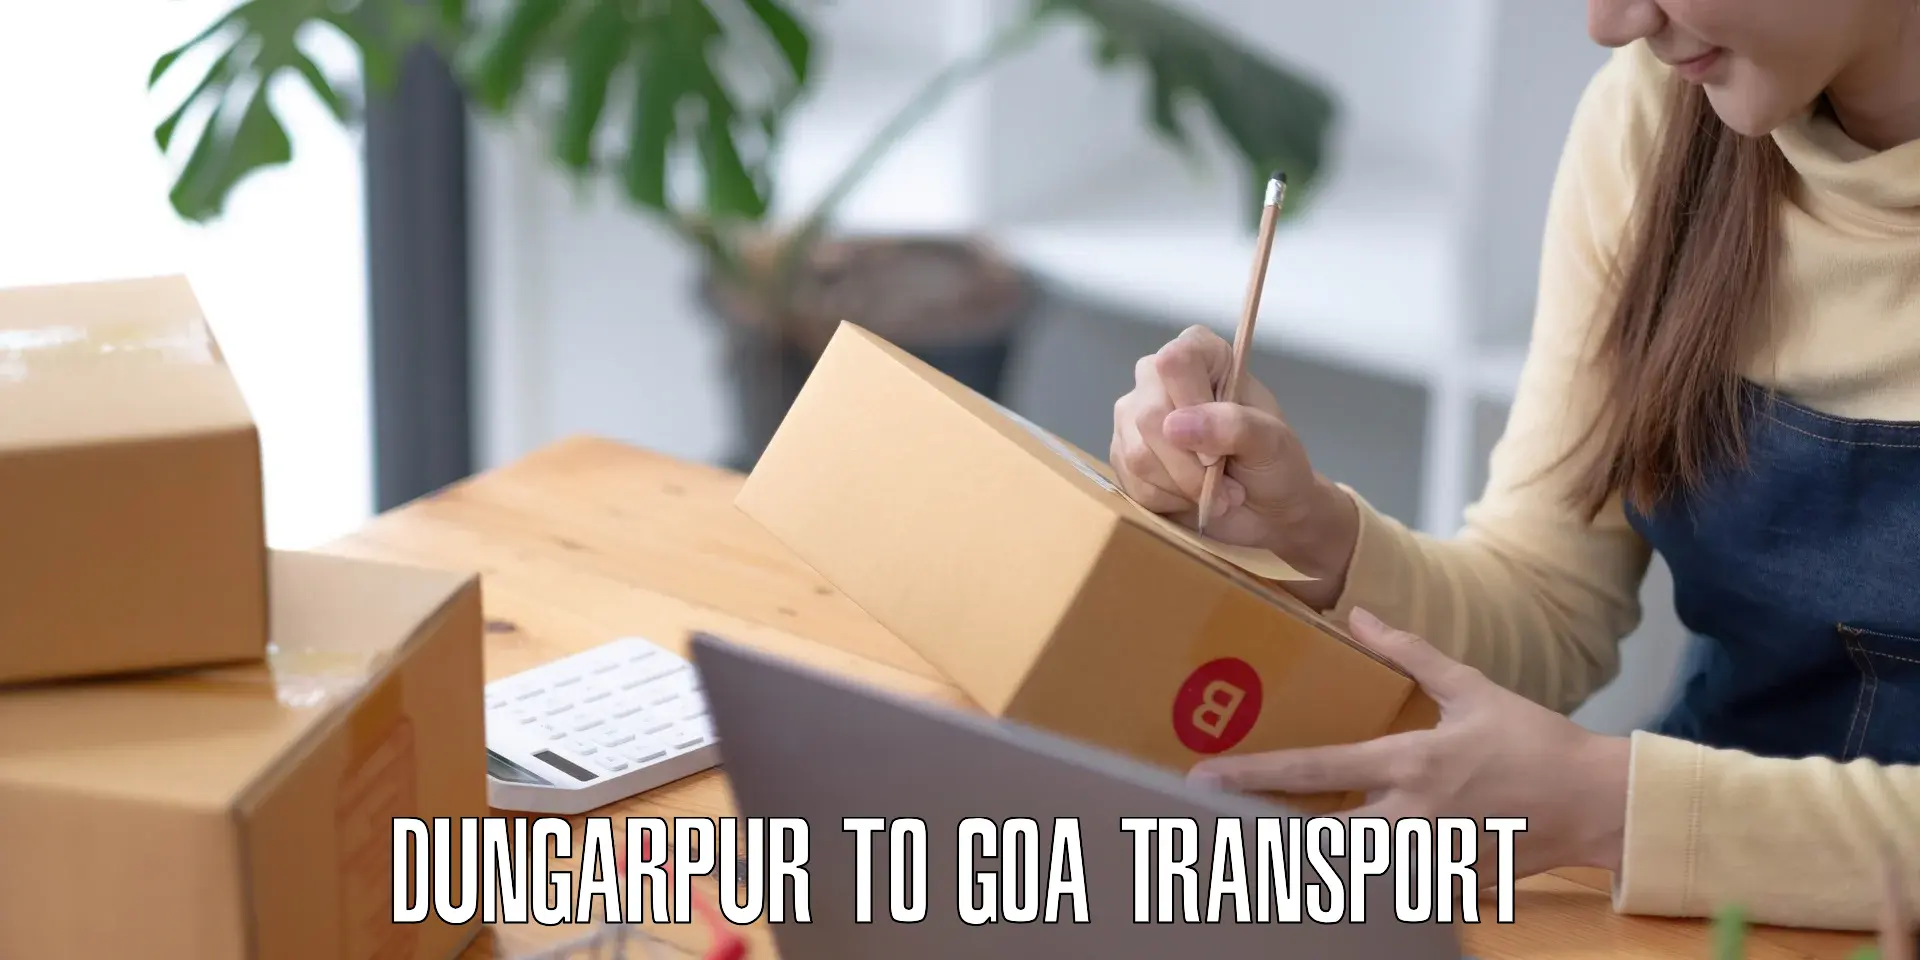 Online transport booking in Dungarpur to Panjim